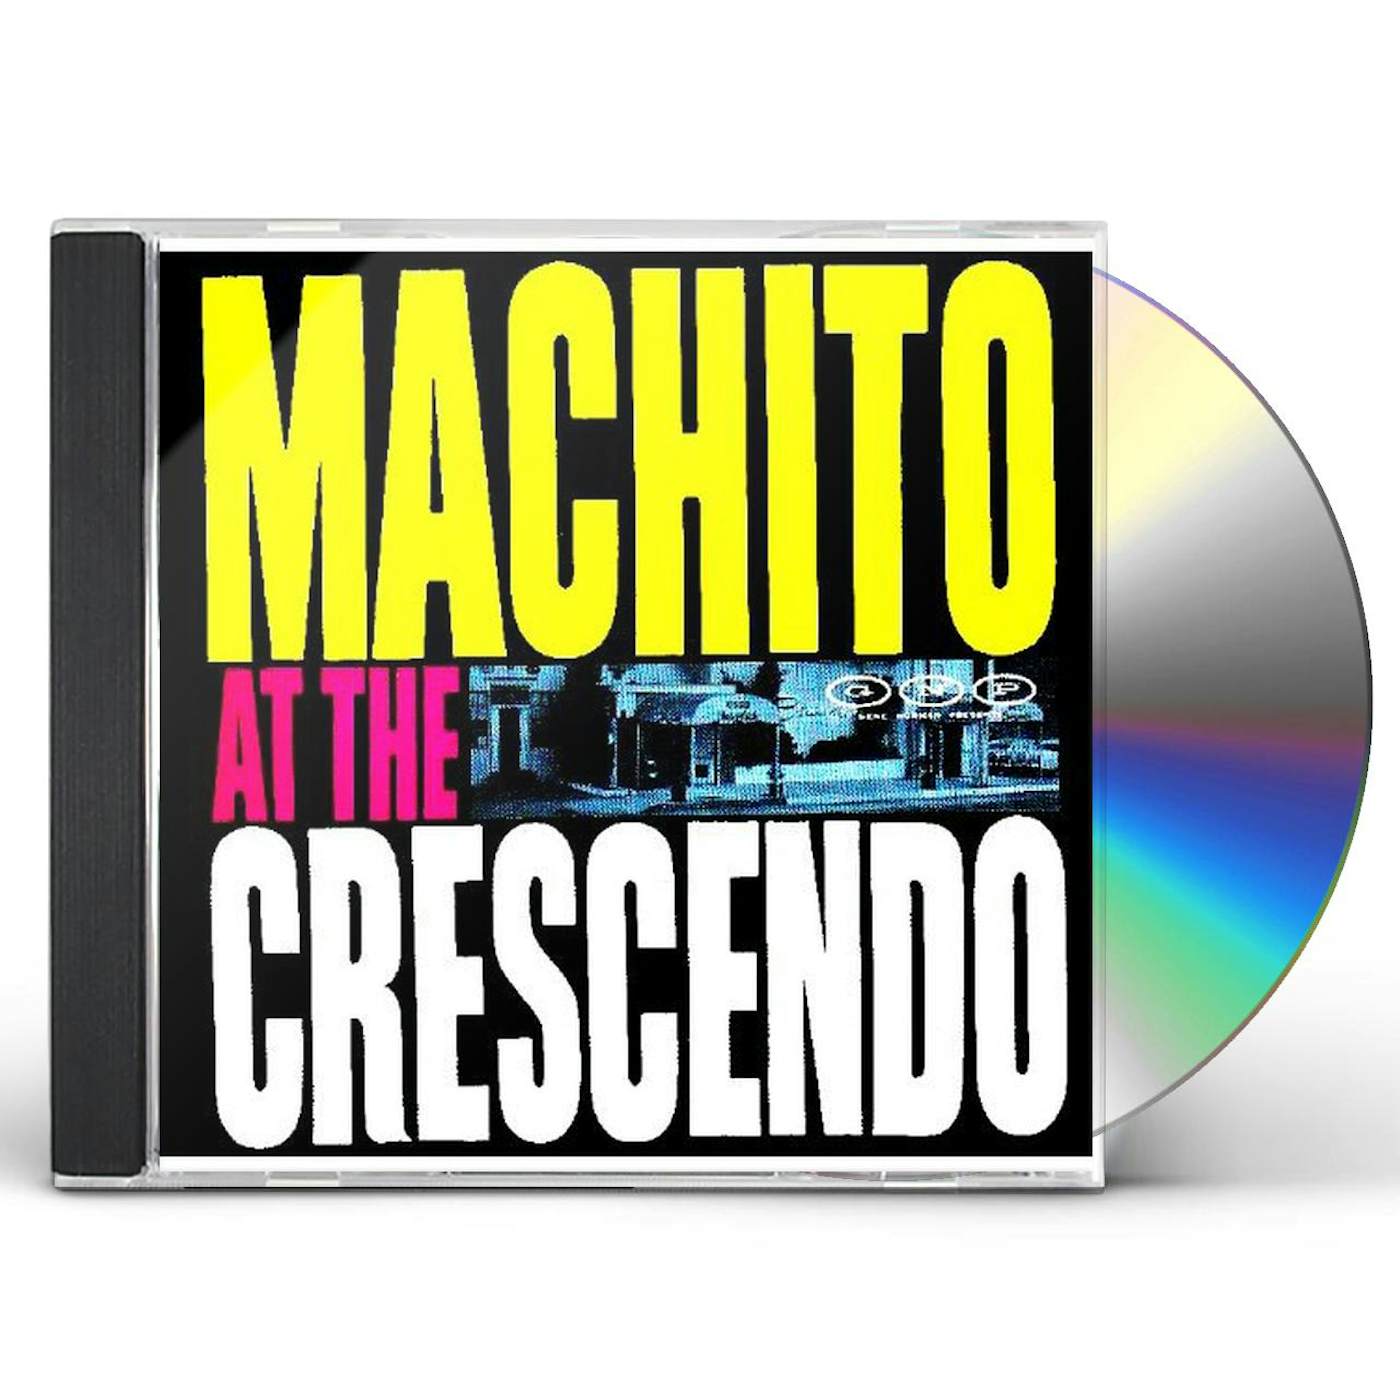 Machito AT THE CRESCENDO CD